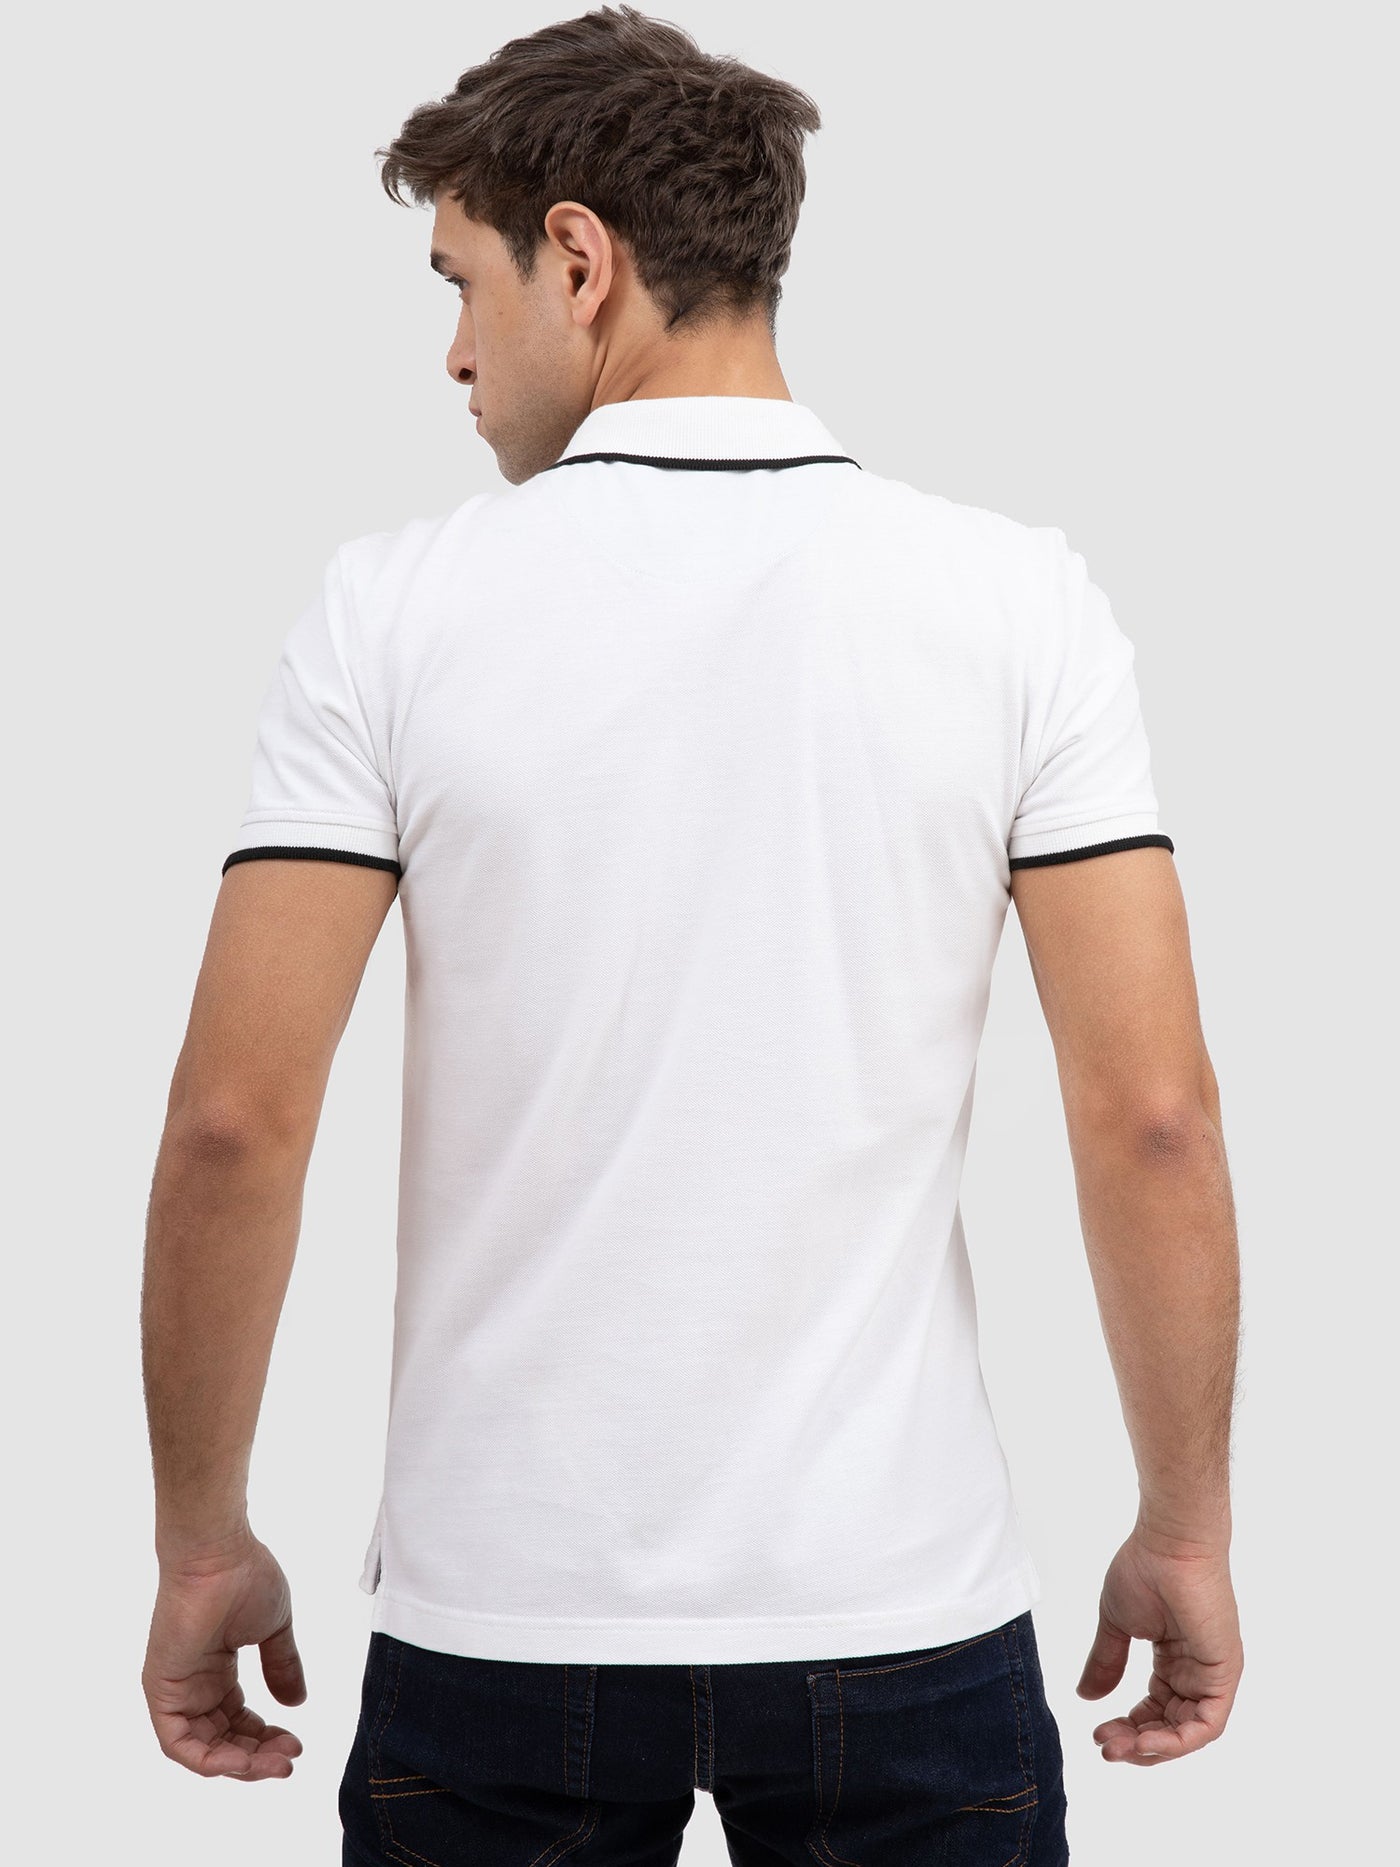 Premoda Mens Contrast Trim Polo Shirt